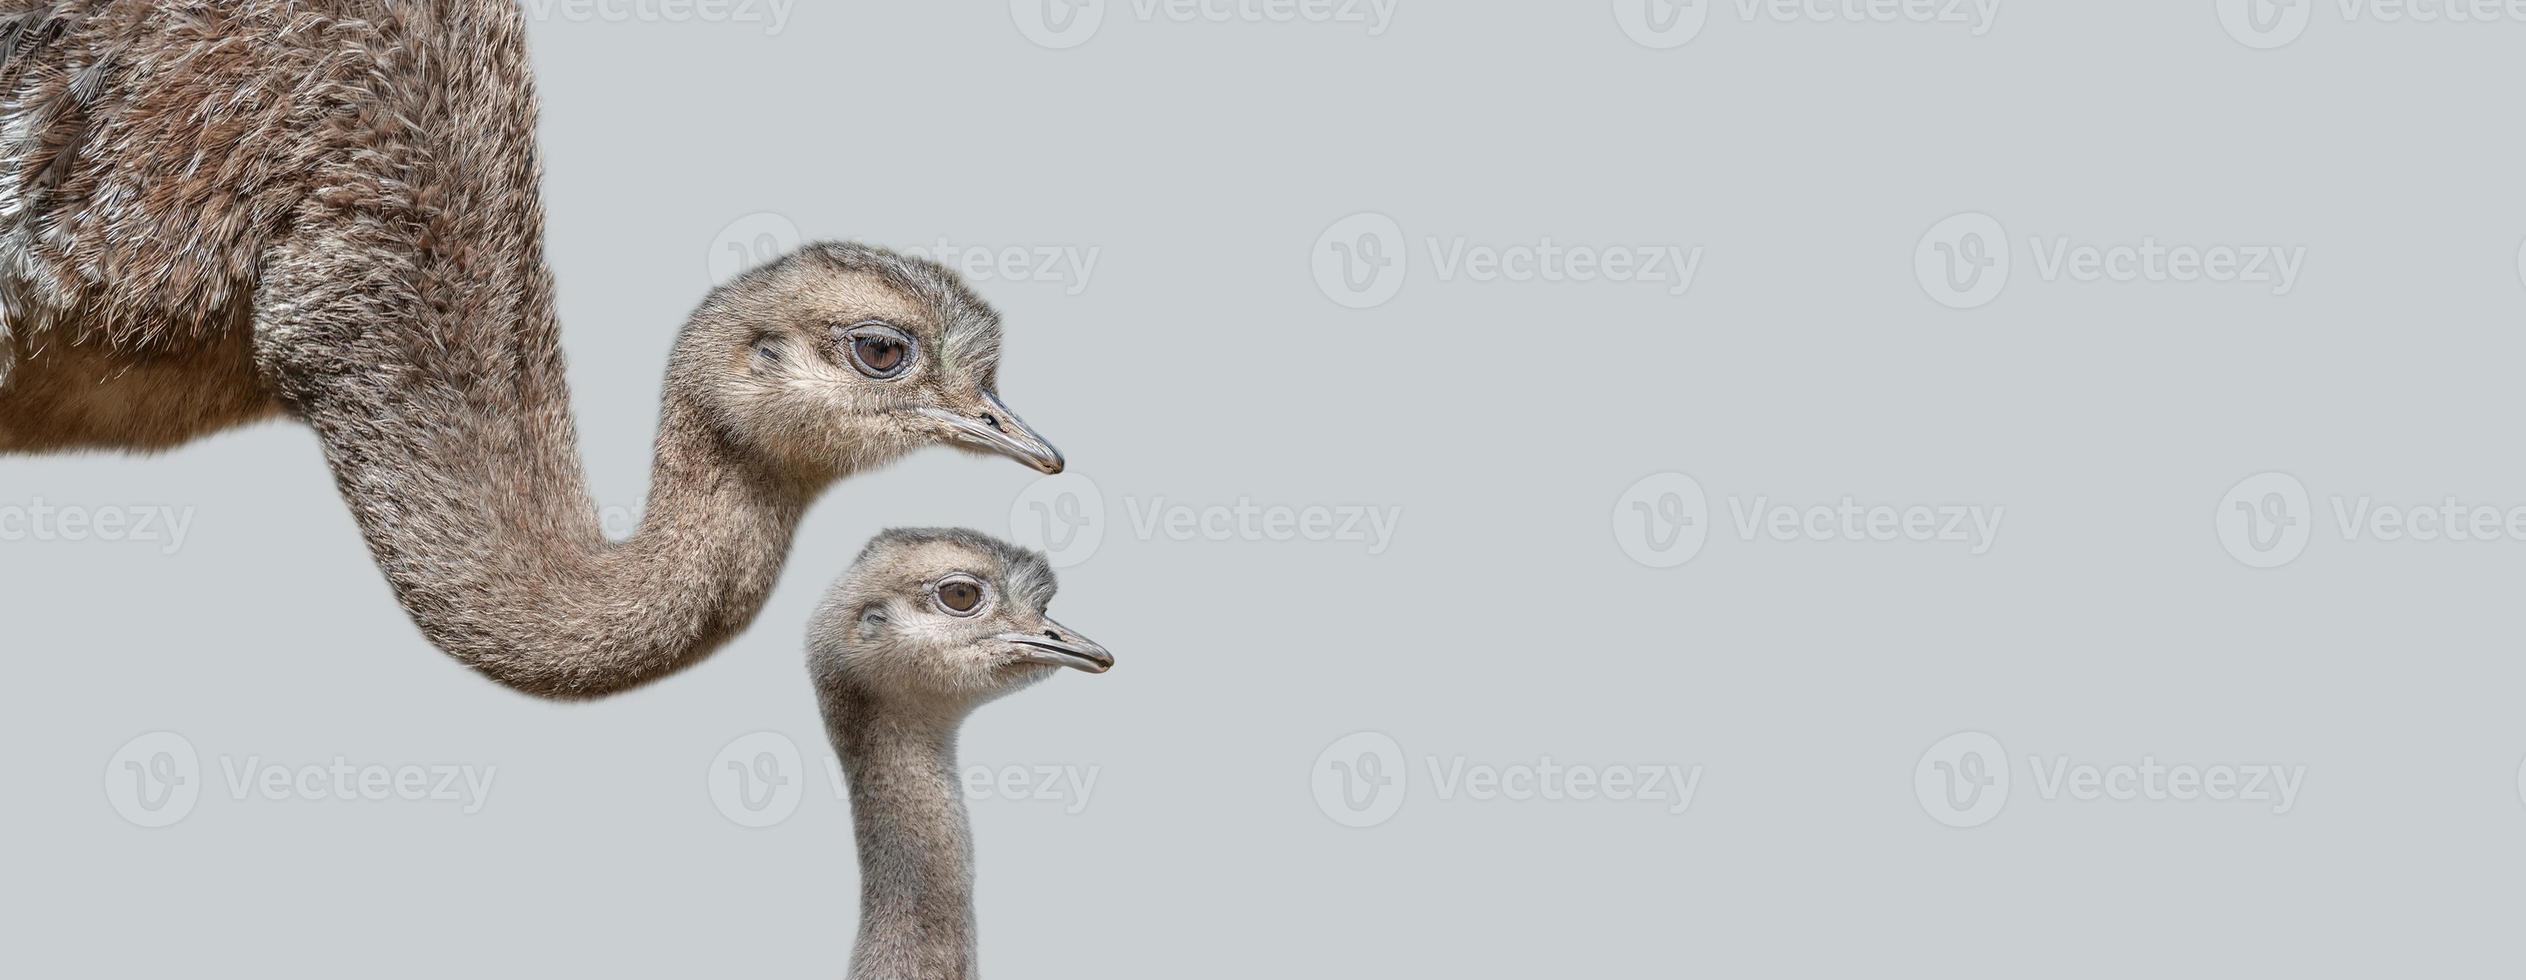 banner com uma mãe avestruz com seu filhote bonito e curioso em fundo cinza sólido com espaço de cópia. conceito de biodiversidade e conservação da vida selvagem. foto